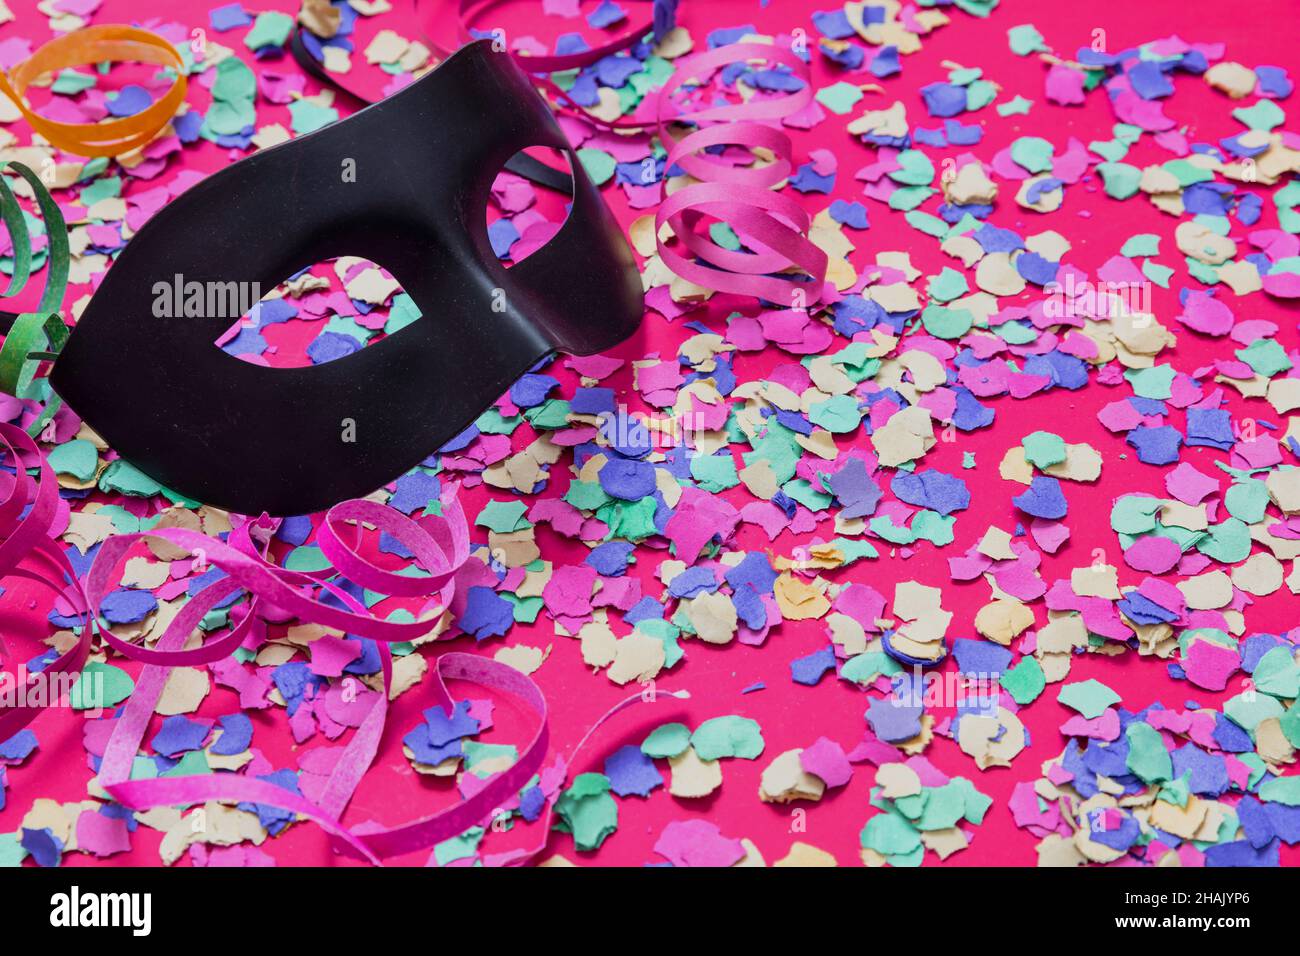 Carnaval confetti fond festif.Masque noir et cercles de papier colorés et lumineux sur rose.Modèle d'invitation à une fête Banque D'Images